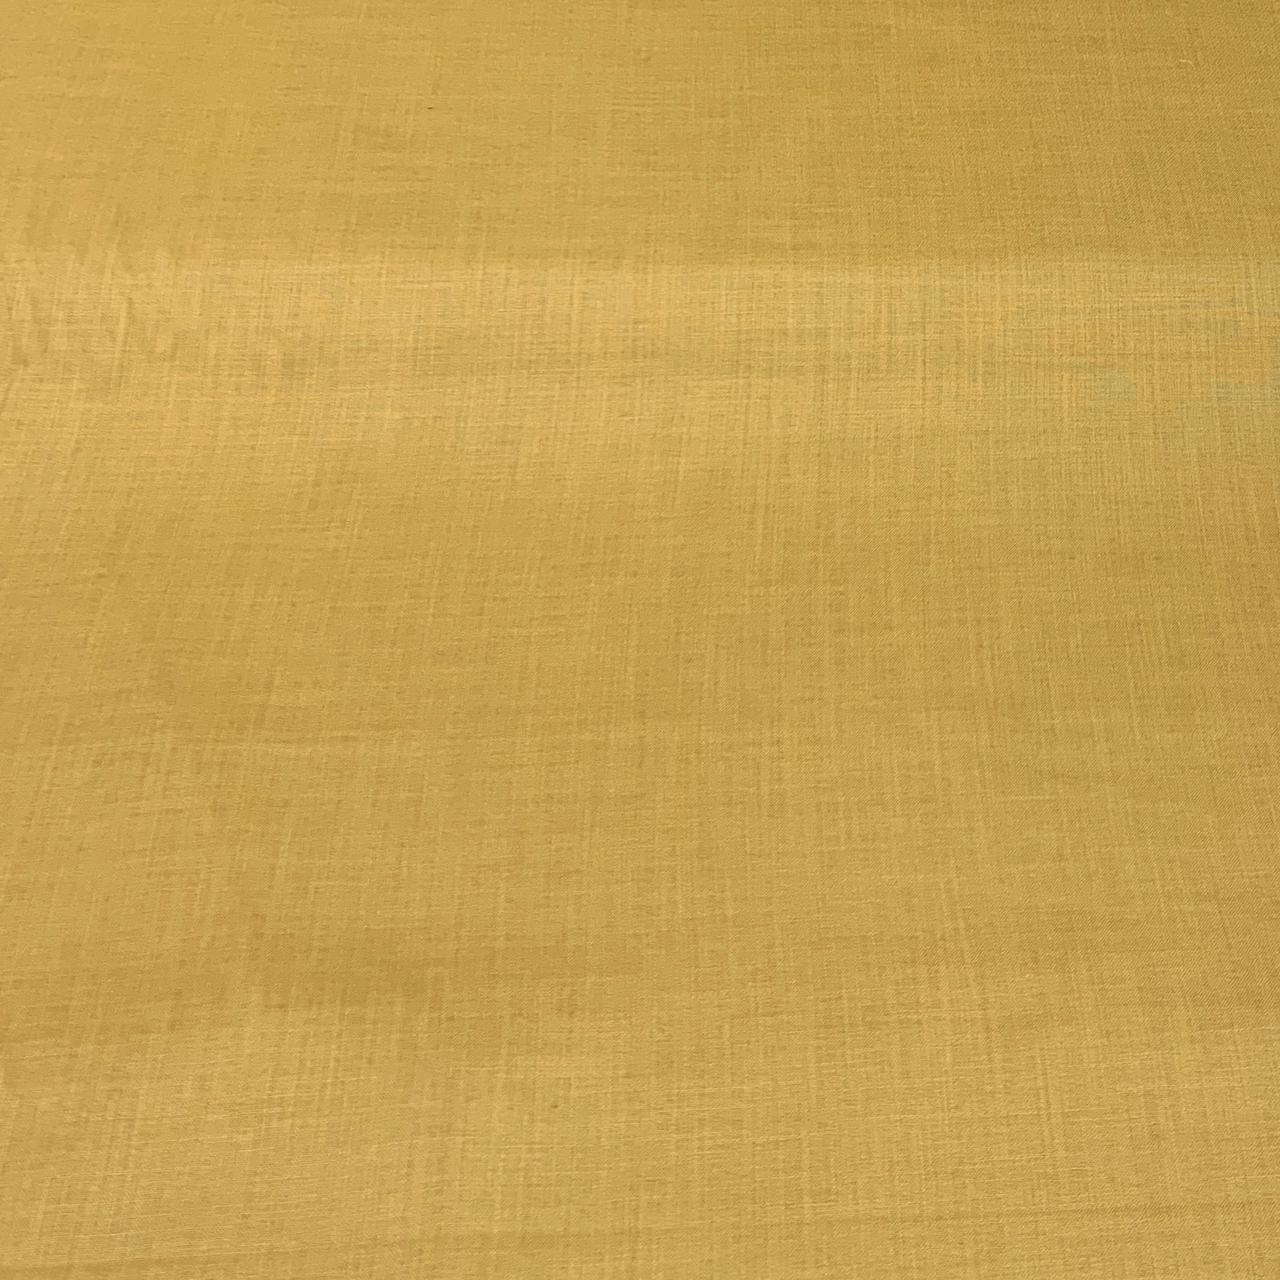 Dark Yellow Plain Cotton Matka Fabric